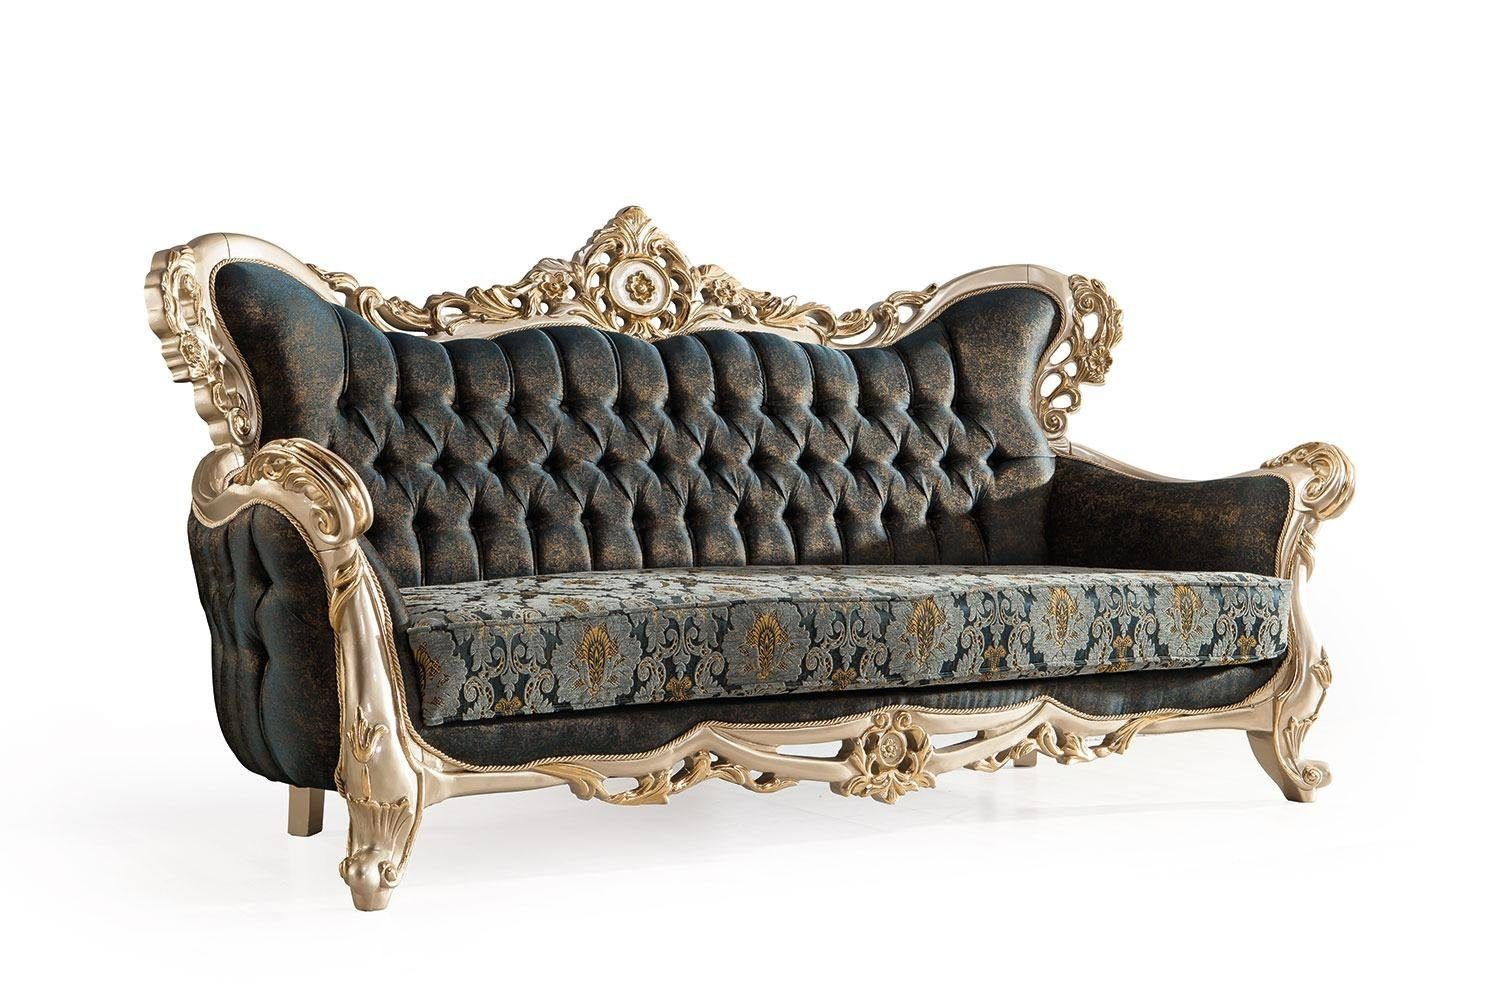 JVmoebel Sofa, Luxus Klassischer Barock Dreisitzer Chesterfield Couch